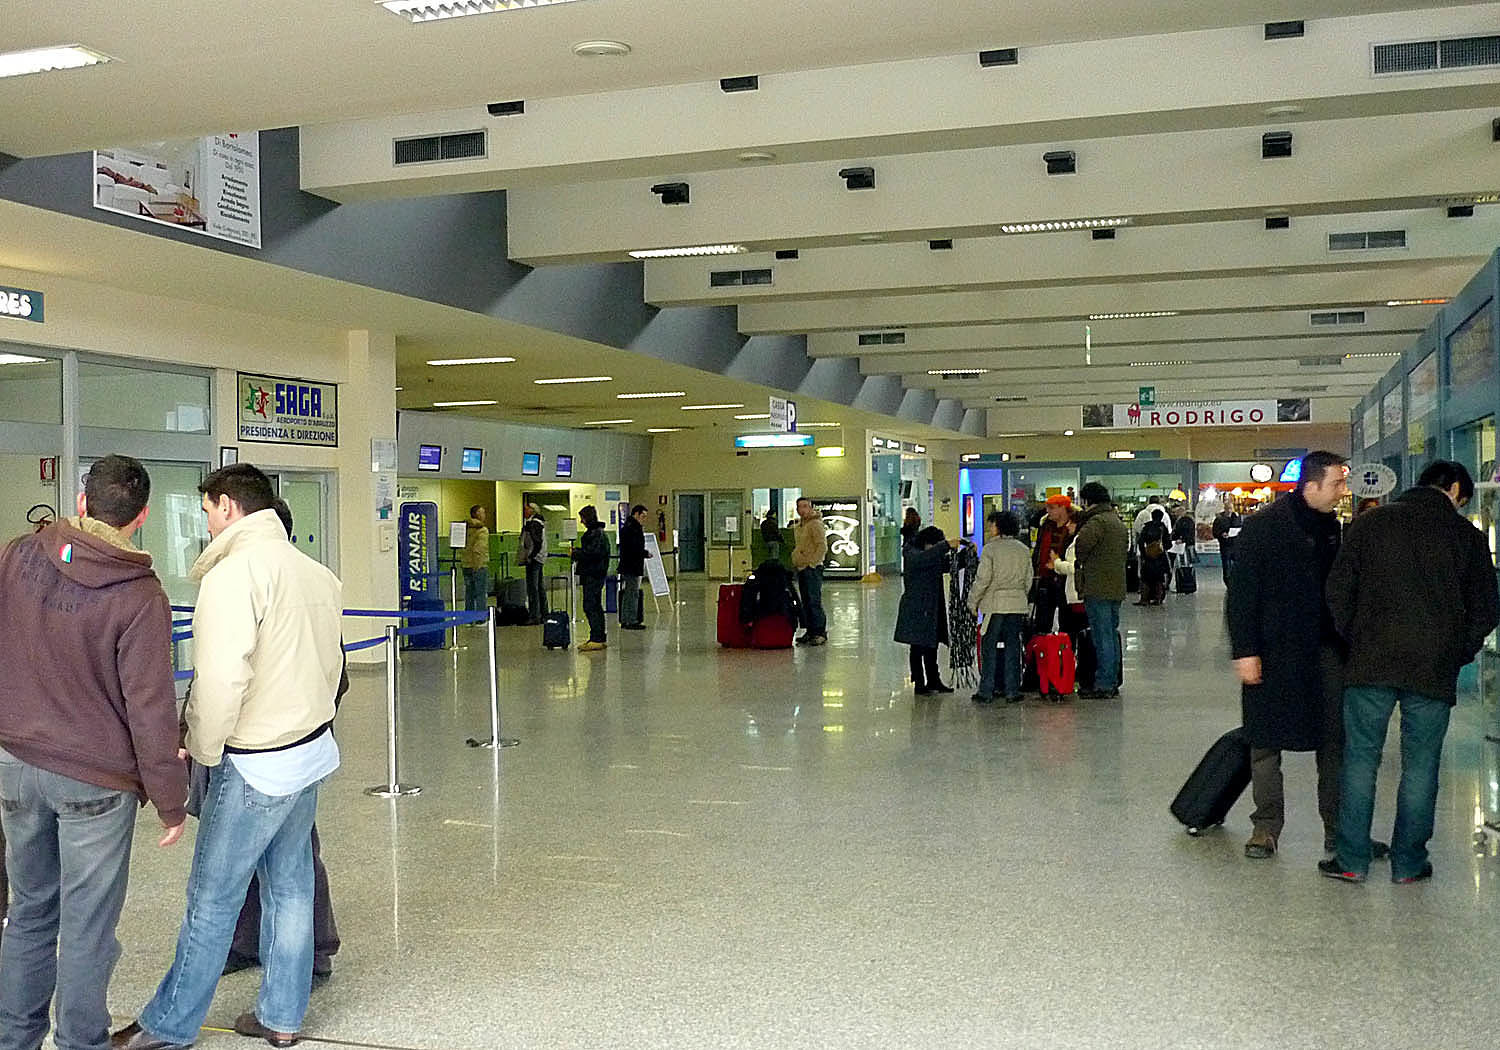 Si fingono ucraini alla volta di Londra: arrestati all’Aeroporto di Pescara